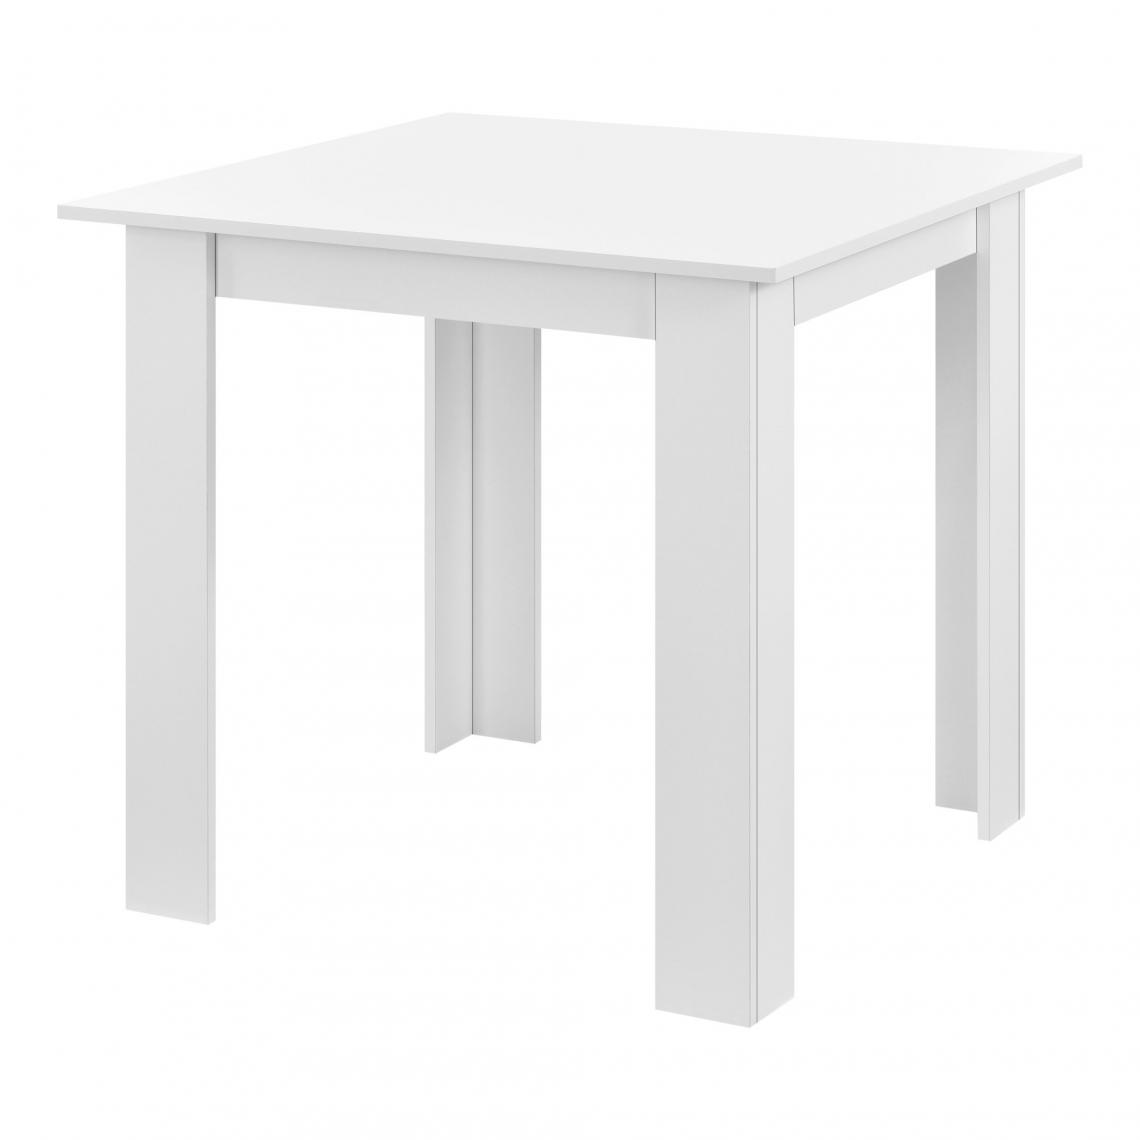 Helloshop26 - Table de forme carrée pour 4 personnes pour salle à manger cuisine salon 80 cm blanc 03_0006232 - Tables à manger